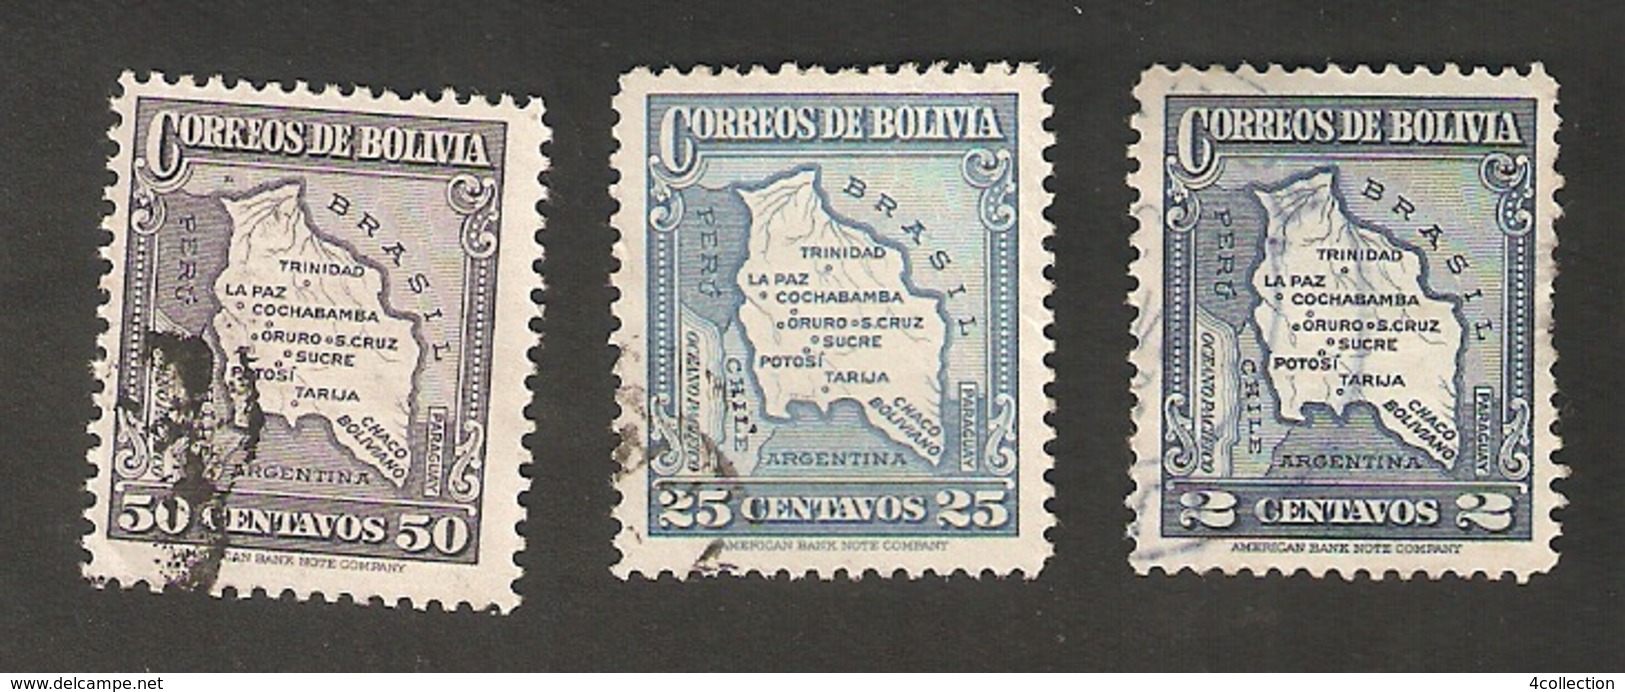 Bo4-9-1. America Correos De BOLIVIA 2 25 50 Centavos 1935 Airmail Map Of Bolivia Set - Bolivia